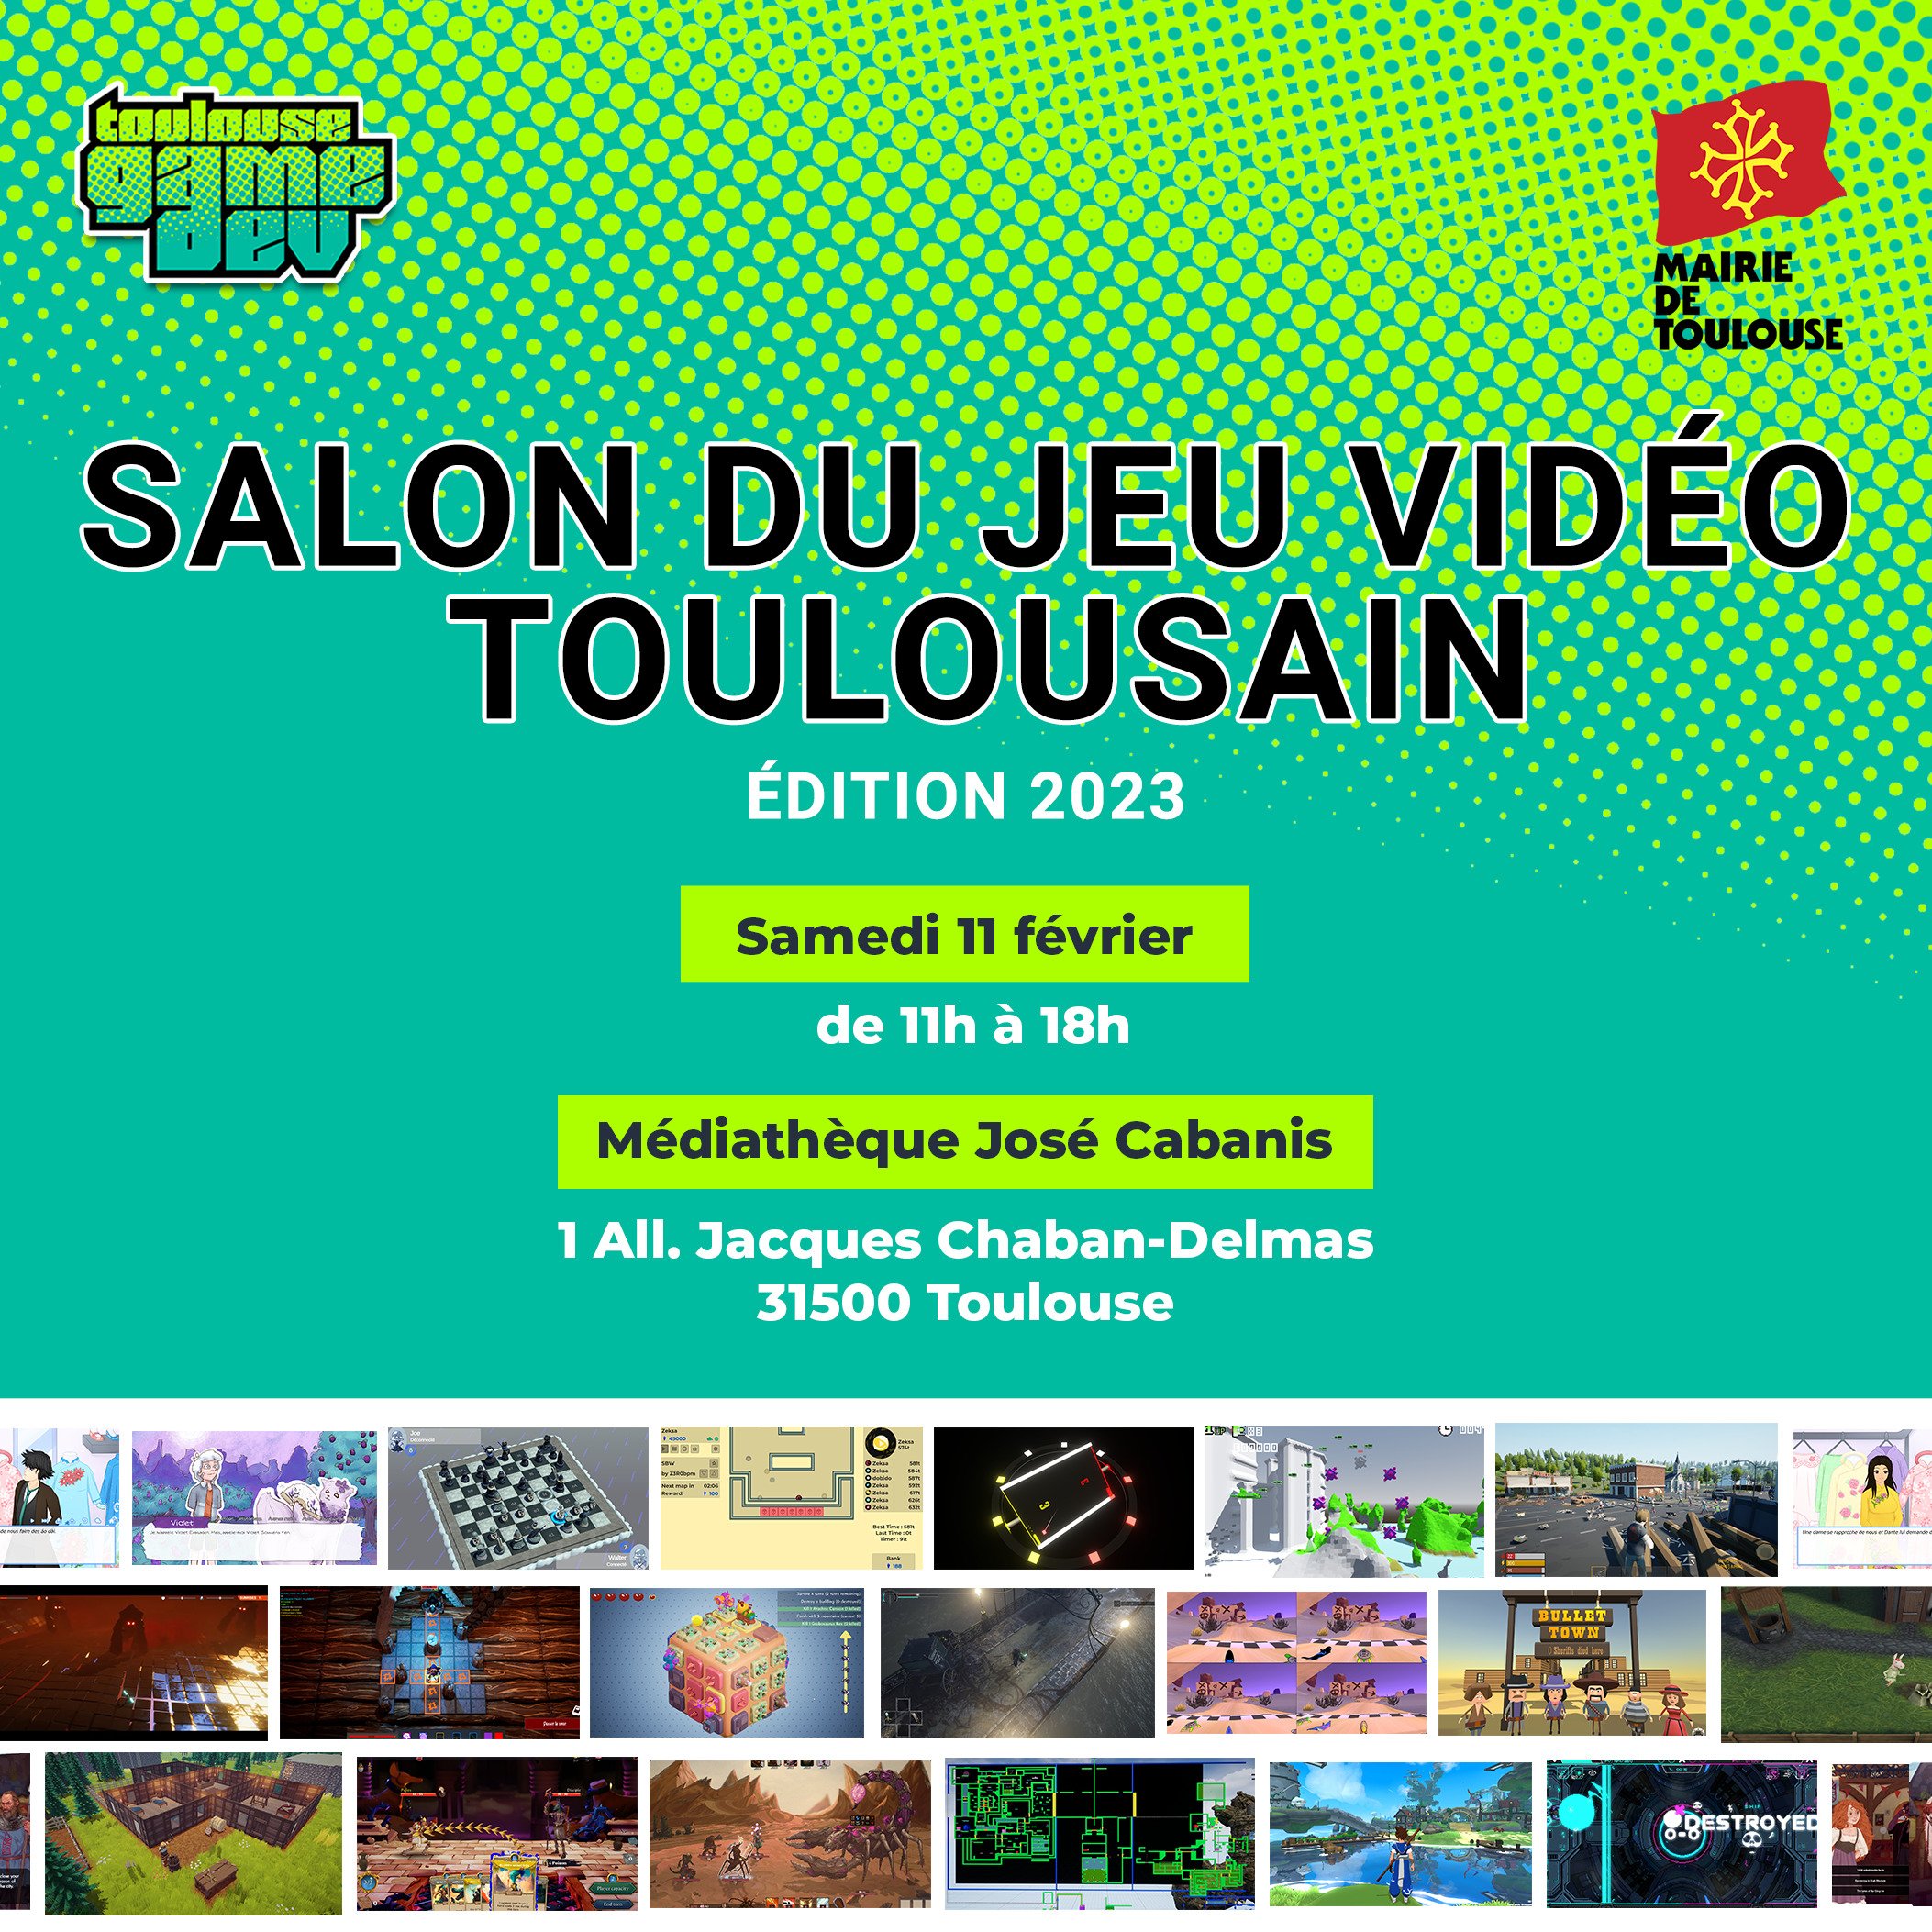 Festival du jeu vidéo Toulousain